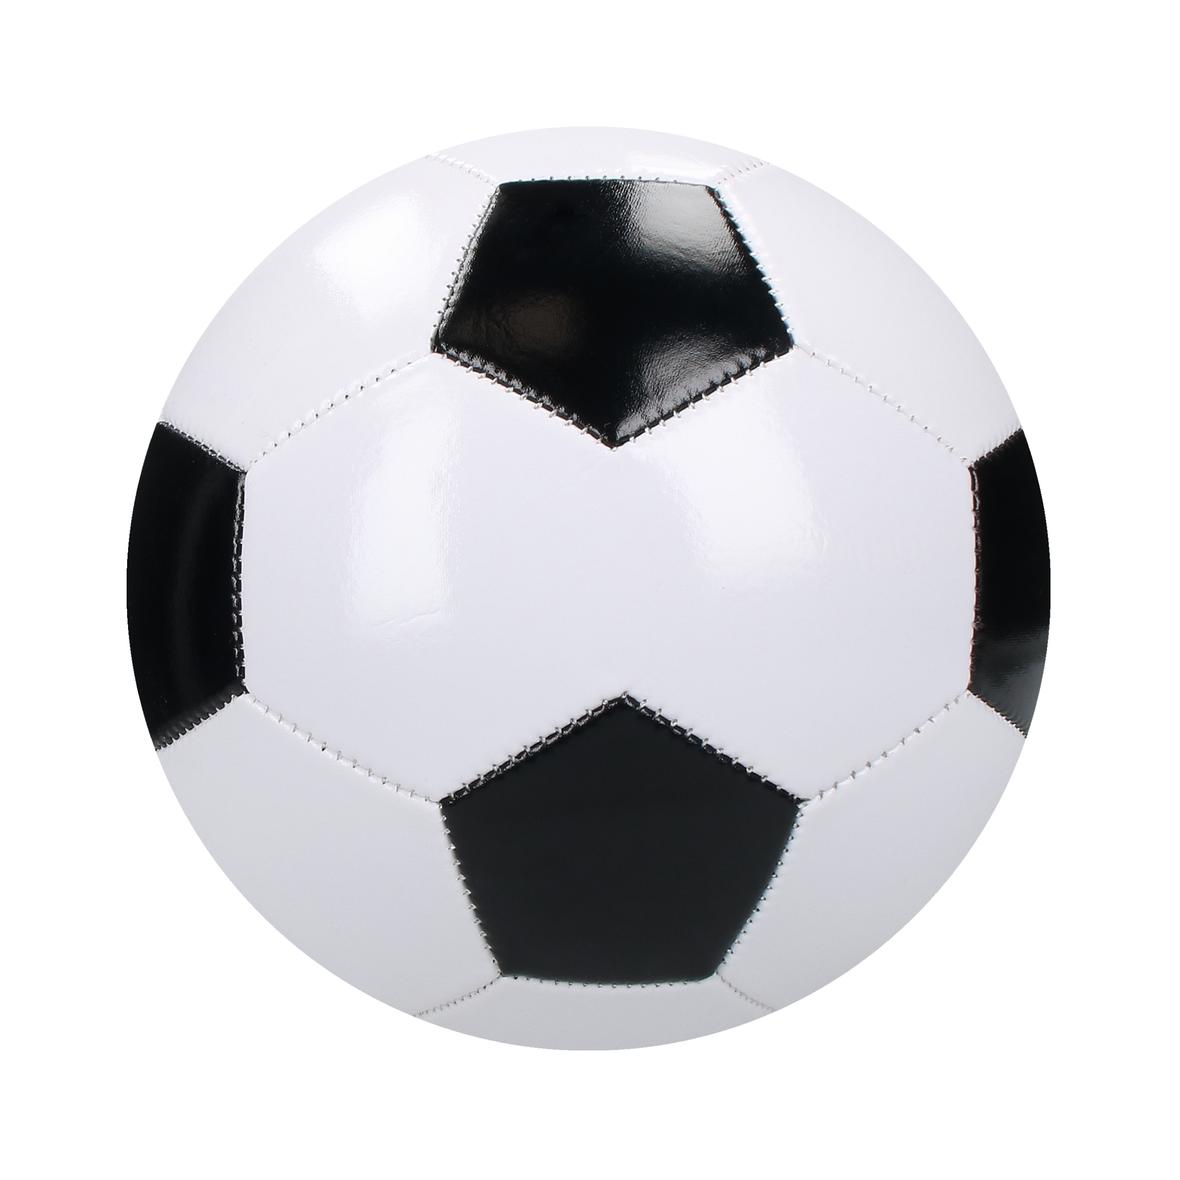 Balón de Fútbol de Diseño Retro Tamaño 5 - Fonzaleche